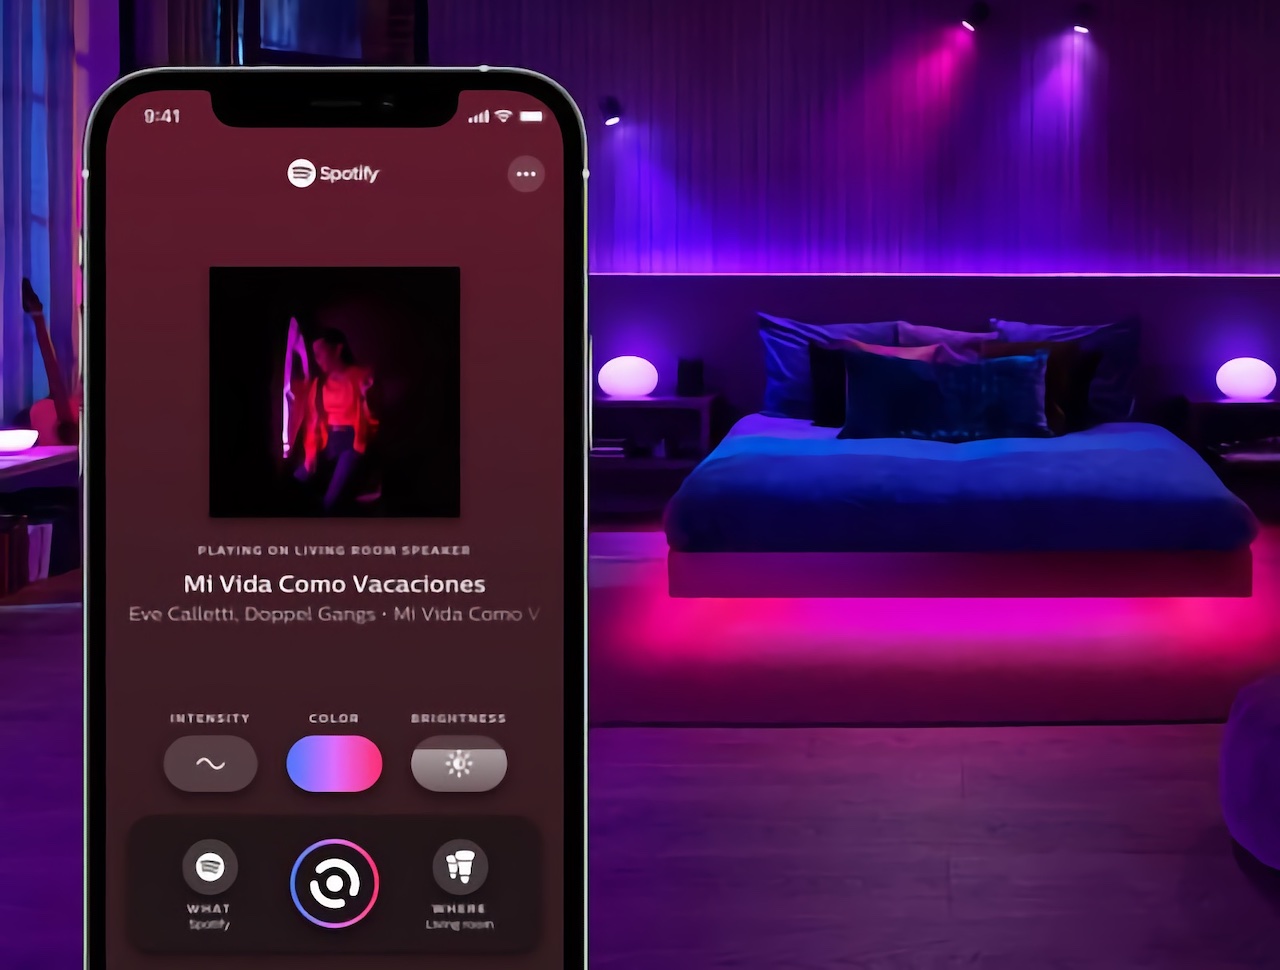 Oświetlenie Philips Hue może teraz synchronizować się bezpośrednio z serwisem Spotify